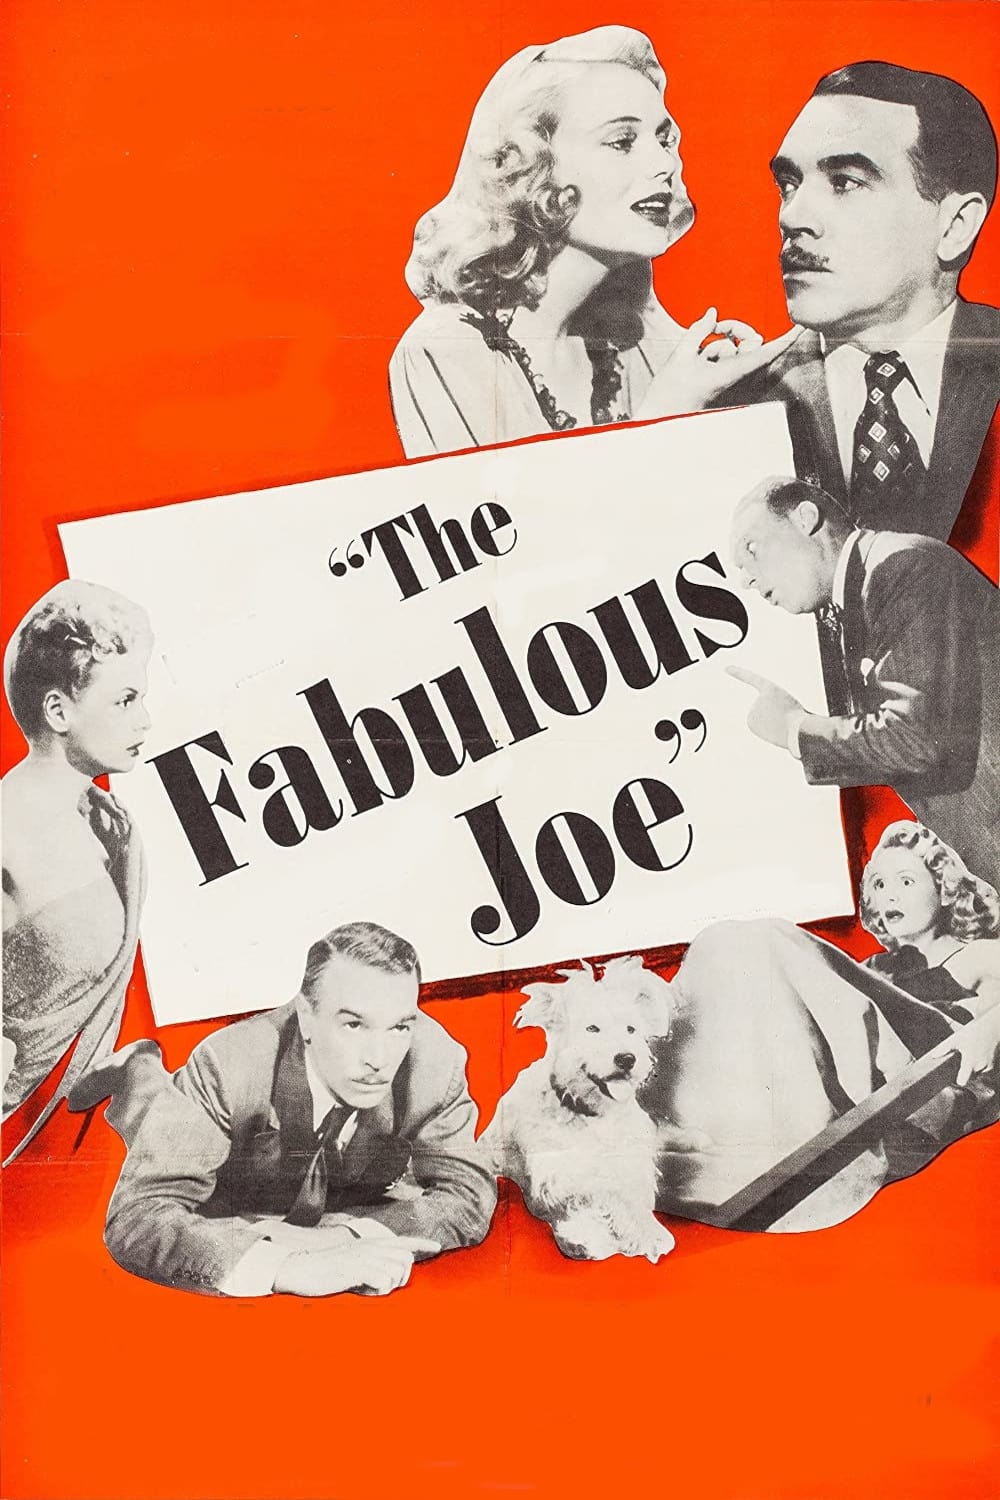 The Fabulous Joe (1947)